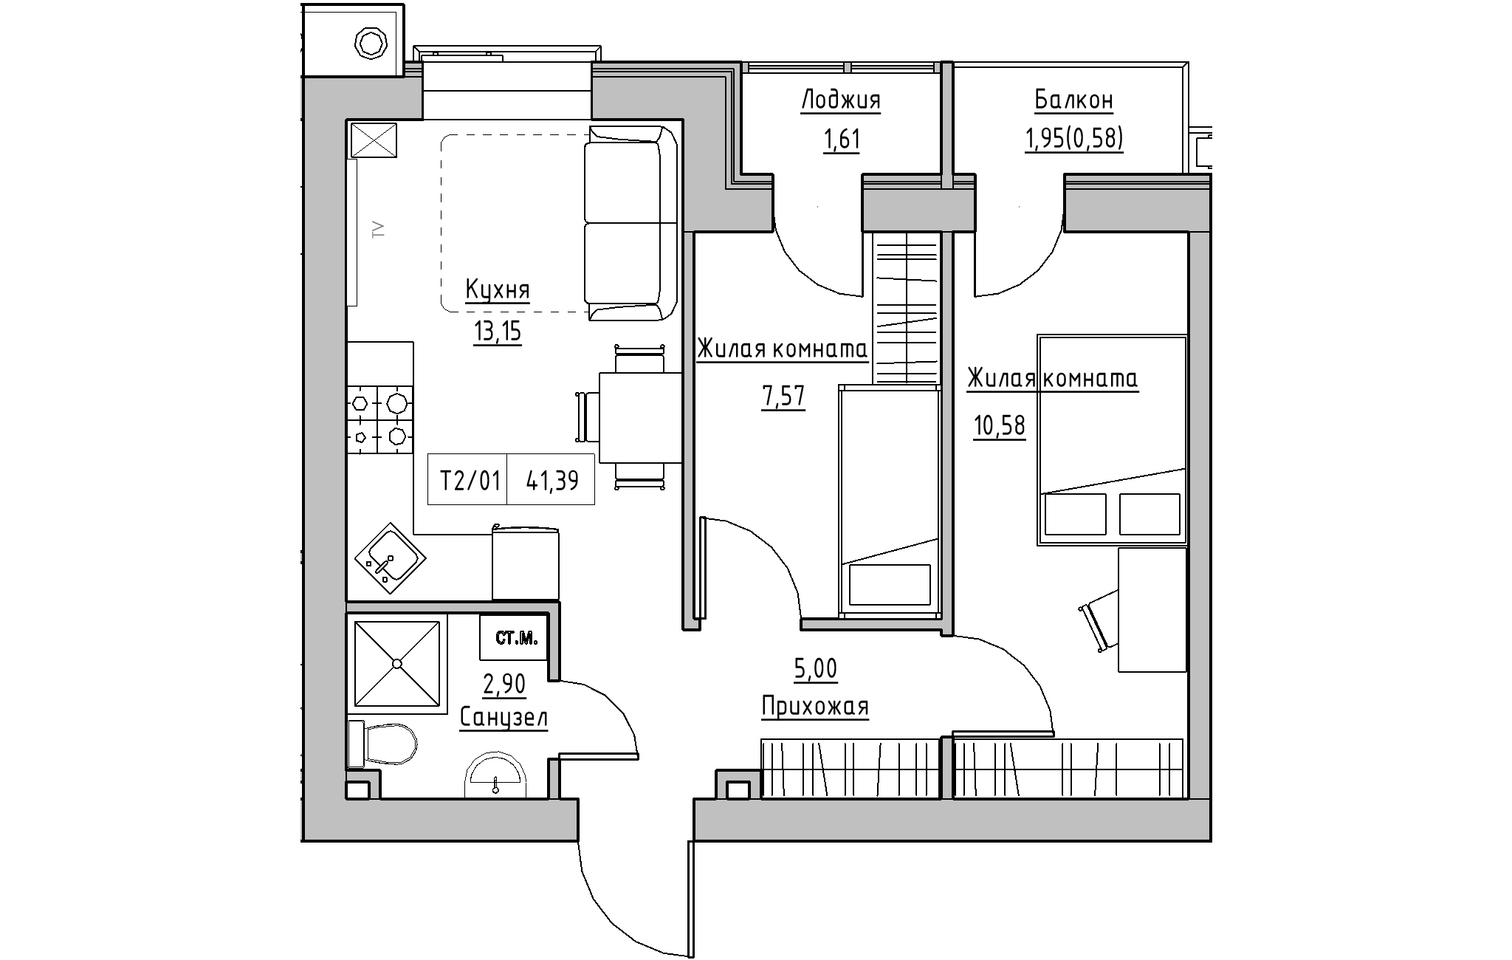 Планировка 2-к квартира площей 41.39м2, KS-013-03/0009.